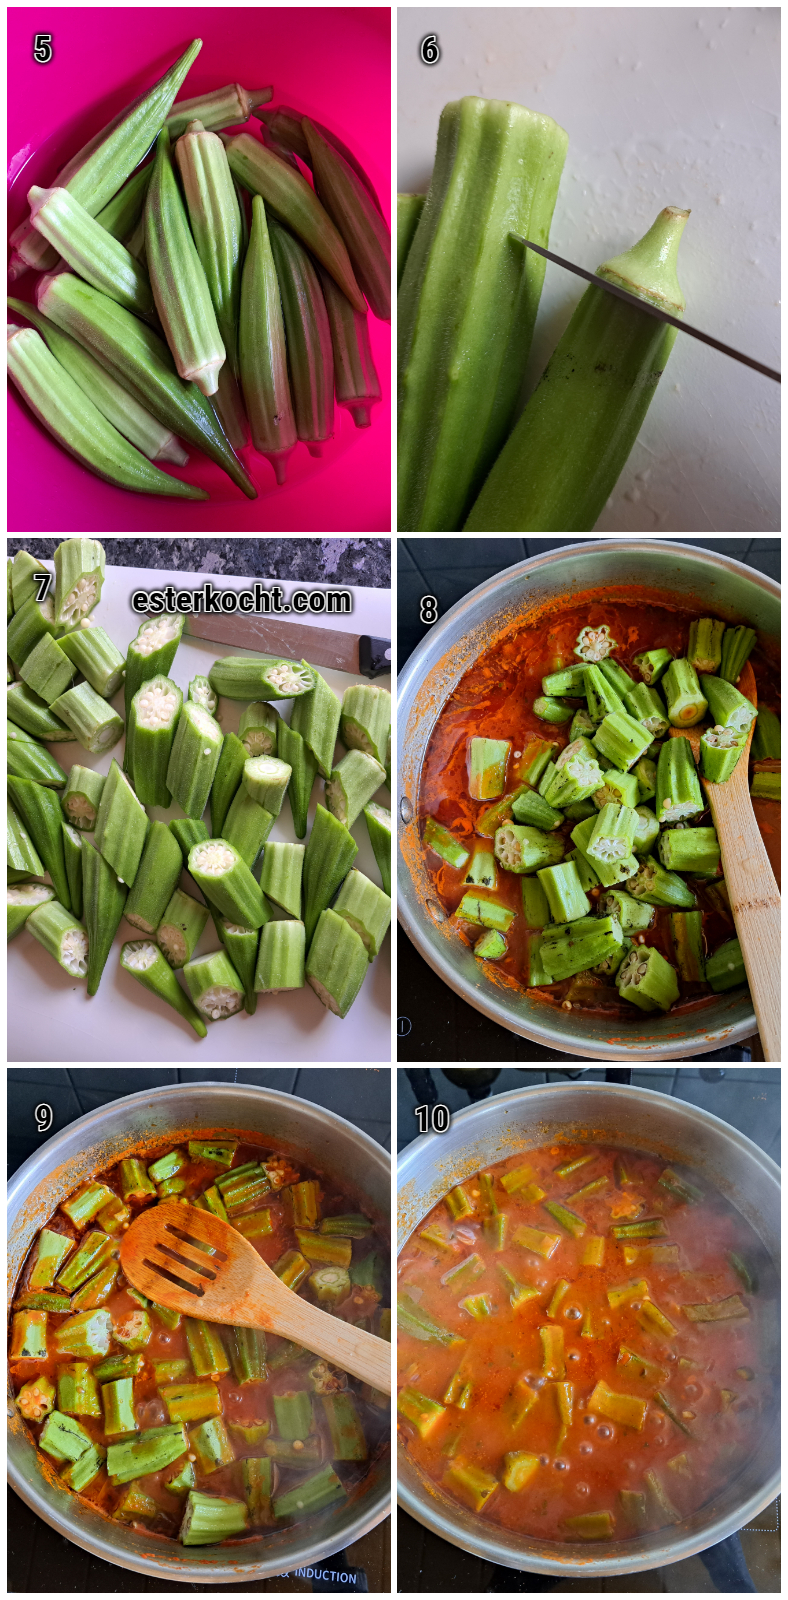 Schritte zur Zubereitung von Okra in Tomatensauce. Bilder zeigen das präzise Putzen und Schneiden von Okra sowie das Hinzufügen der Okra-Stücke in die würzige Tomatensauce.